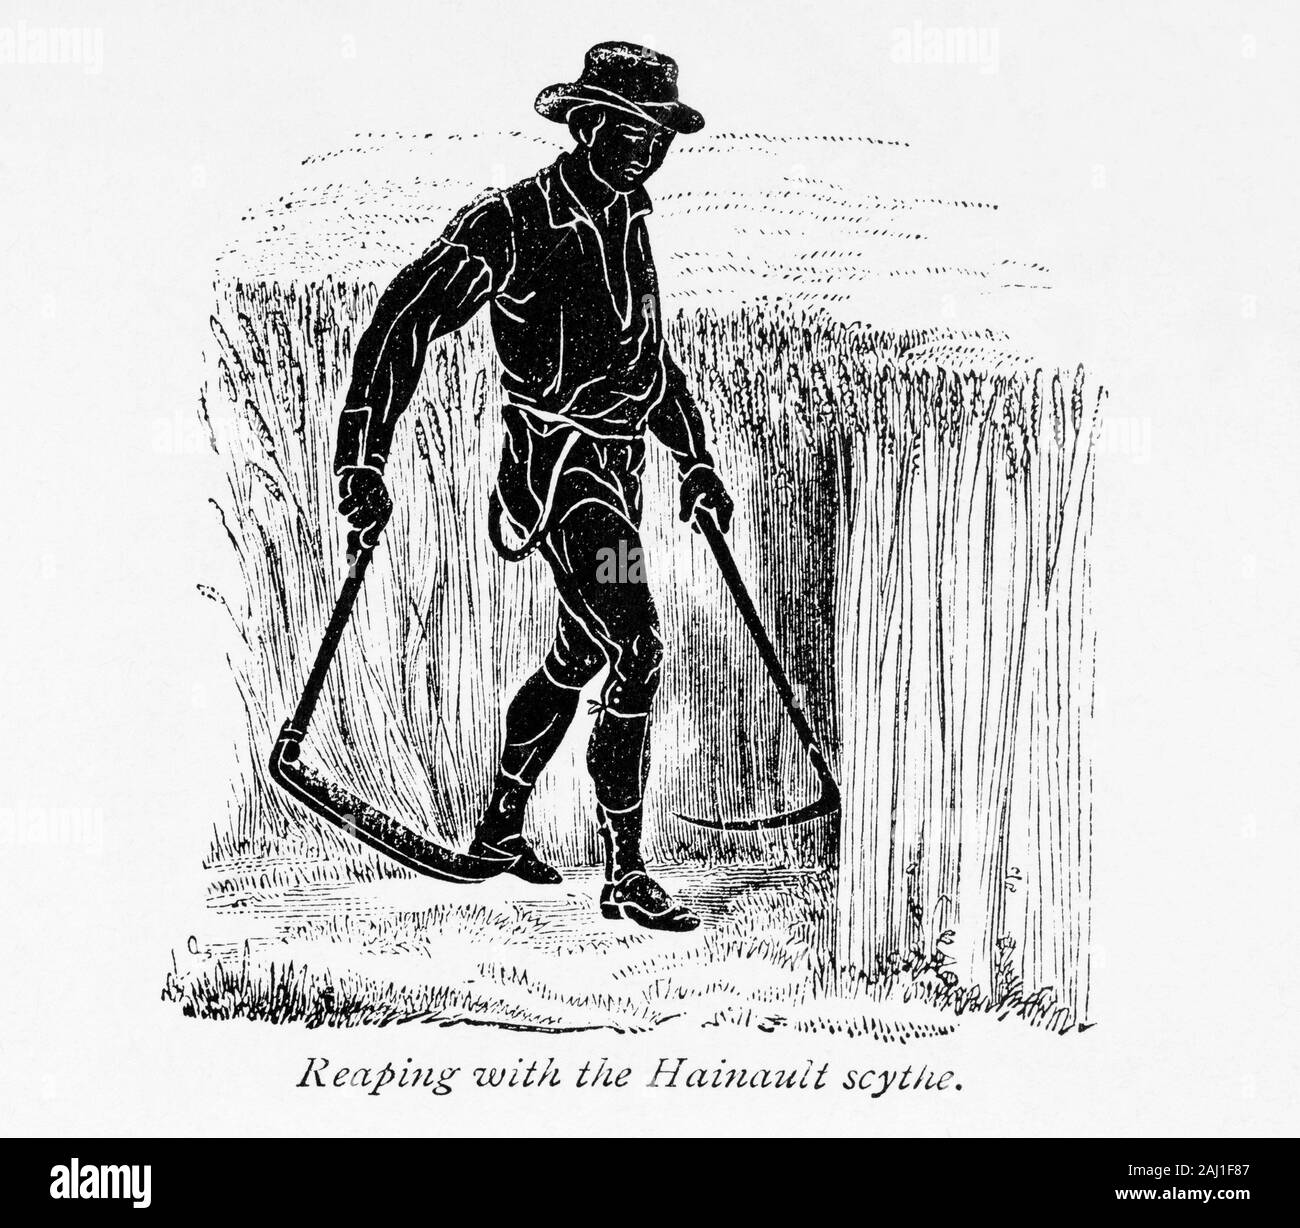 Cosechando con la guadaña Hainault. En el libro de la granja por granjero escocés y el agrónomo Henry Stephens, 1795 - 1874, publicado por primera vez en la década de 1840. Esta ilustración de una edición revisada en 1870. Foto de stock